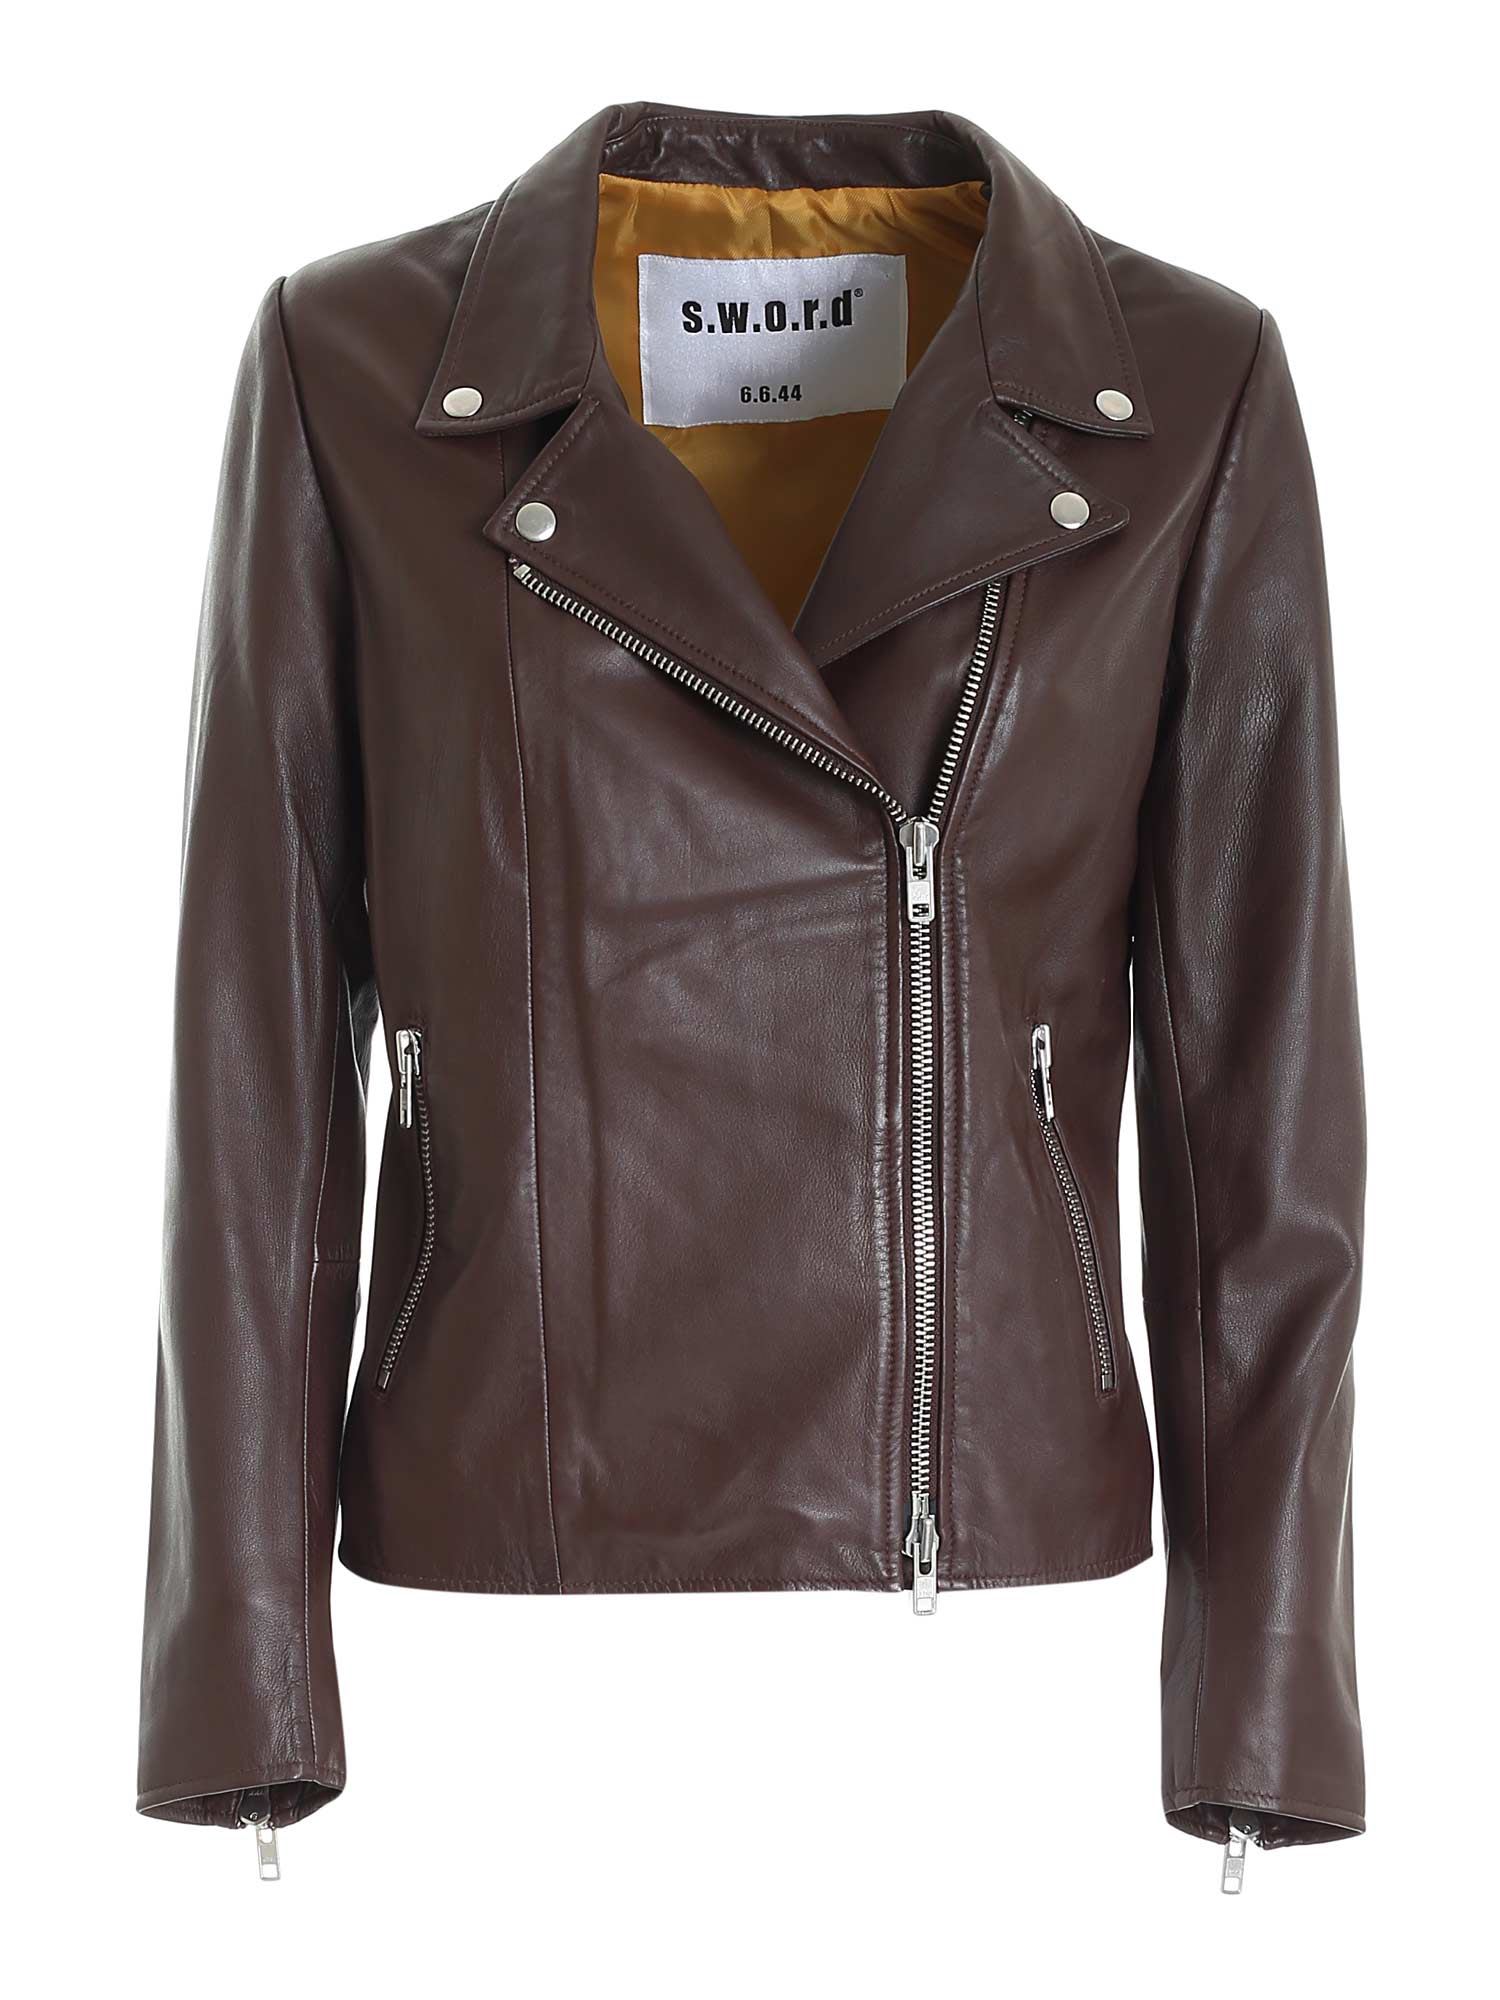 S.W.O.R.D 6.6.44 S.w.o.r.d. - Leather Jacket